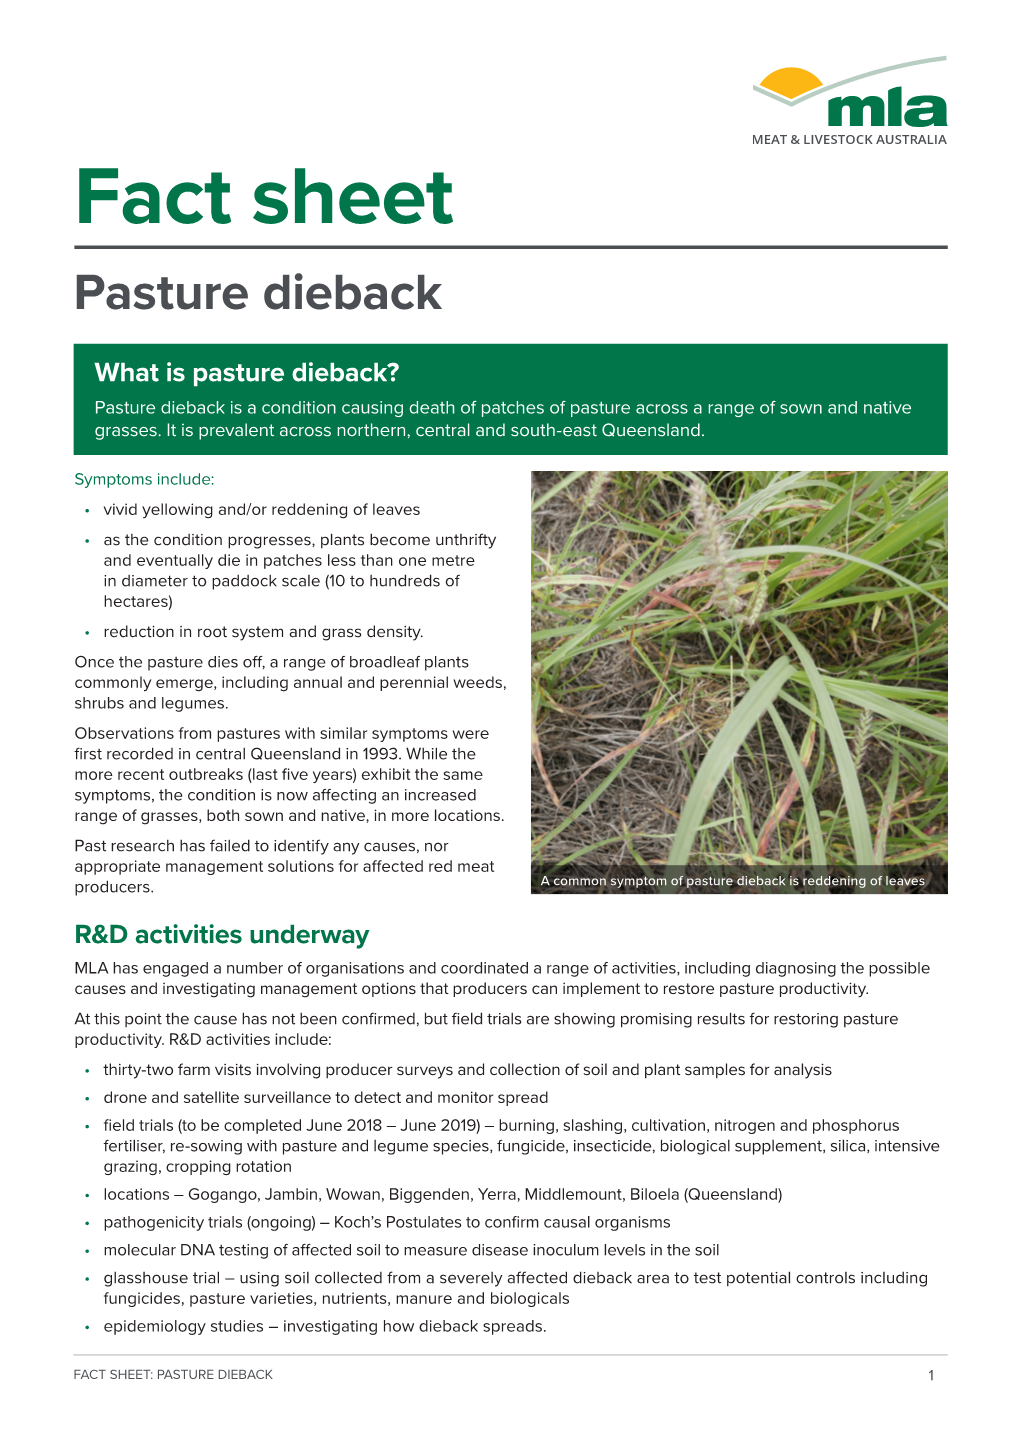 Pasture Dieback Fact Sheet